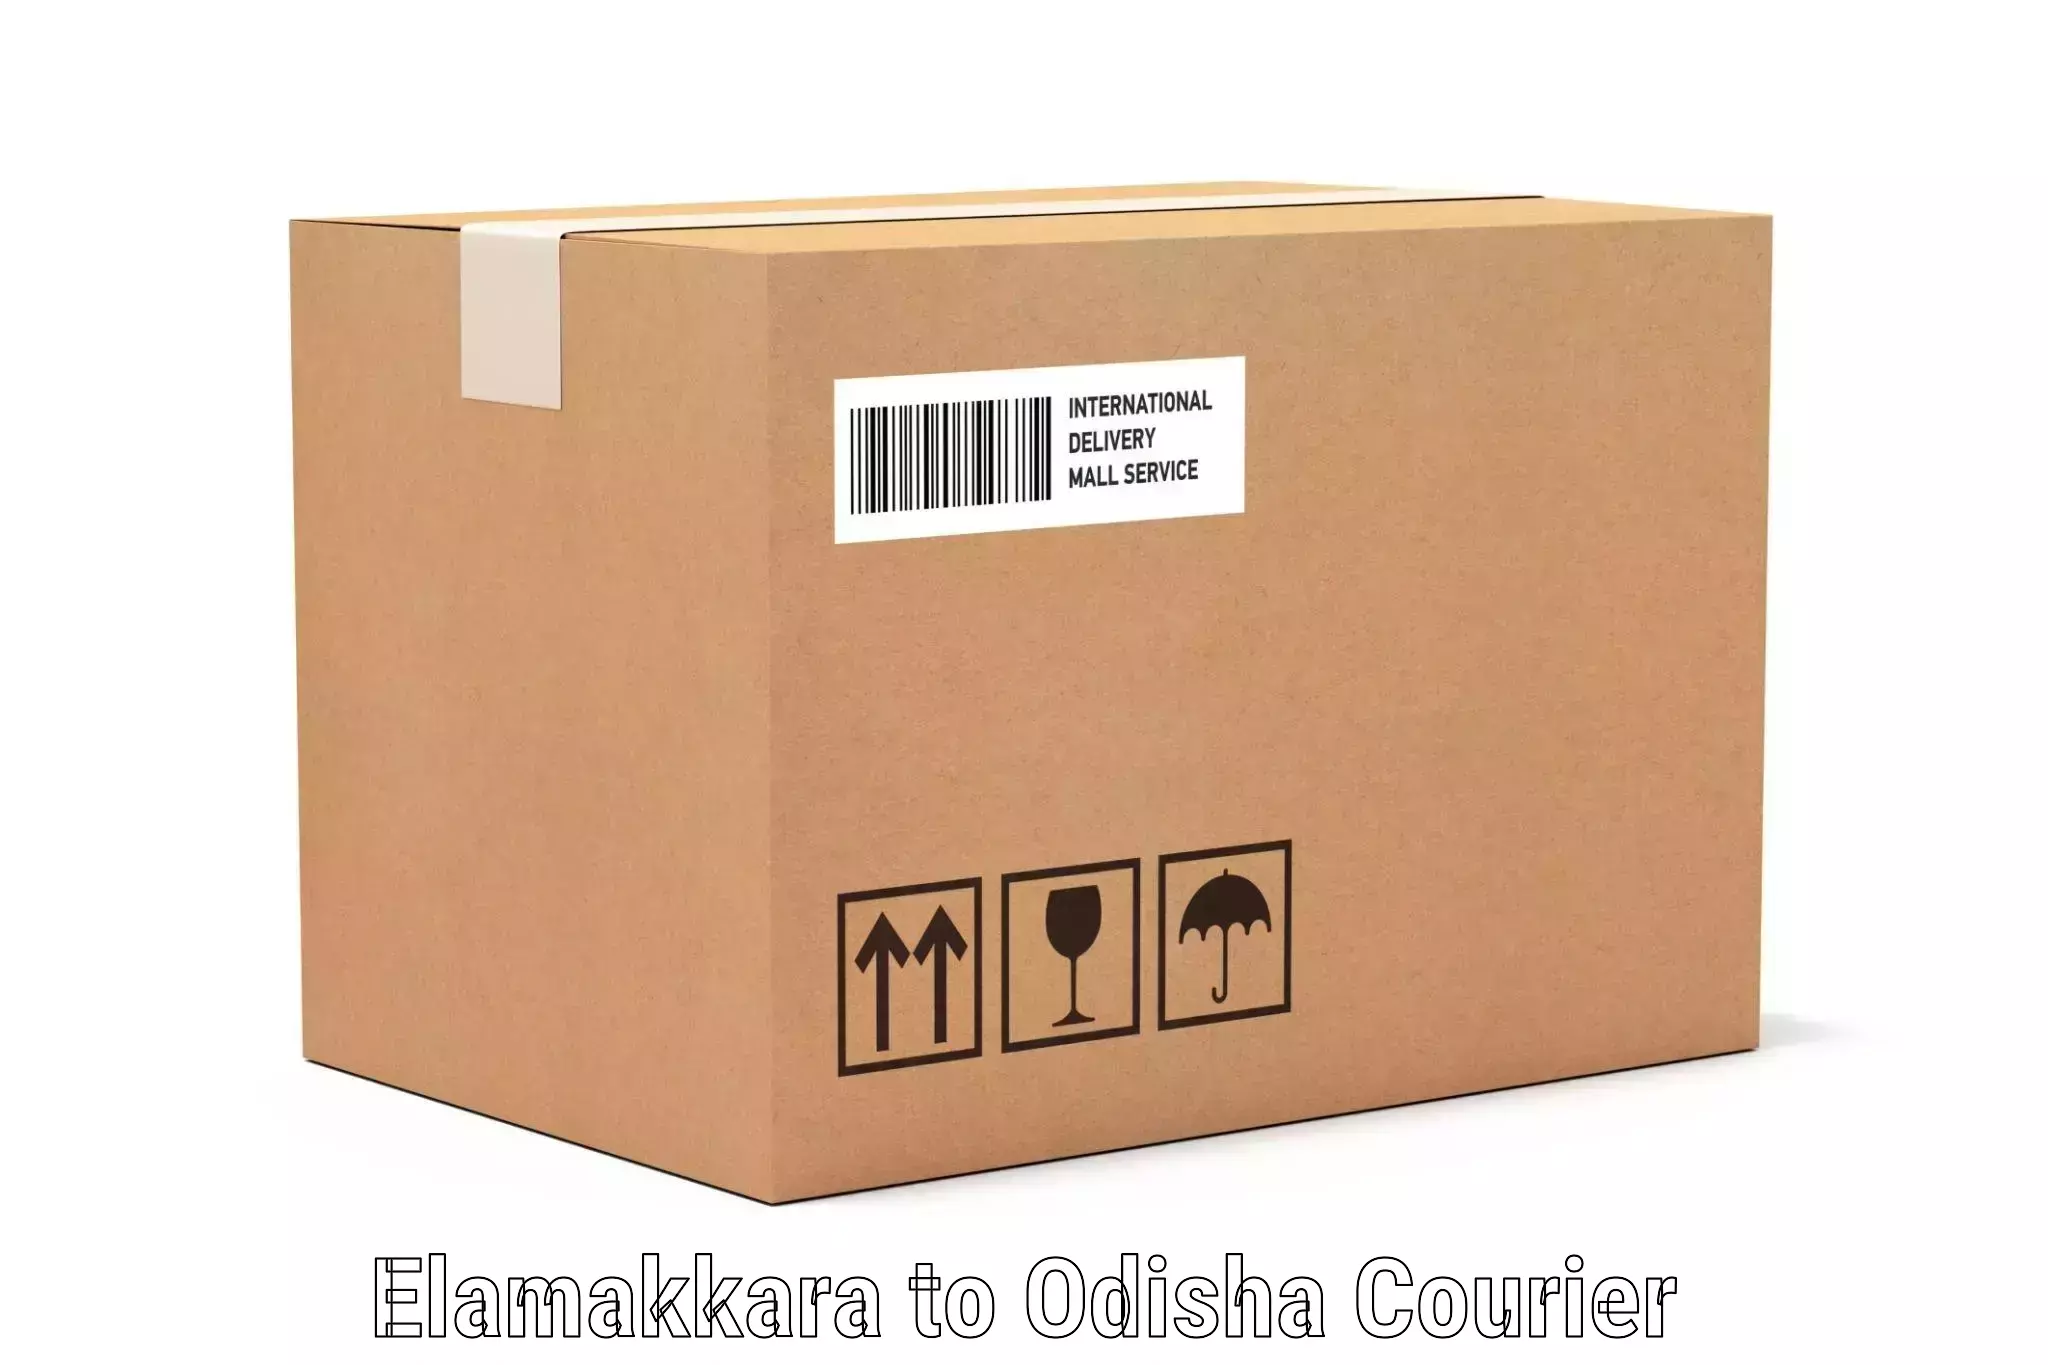 Electronic items luggage shipping Elamakkara to Duburi